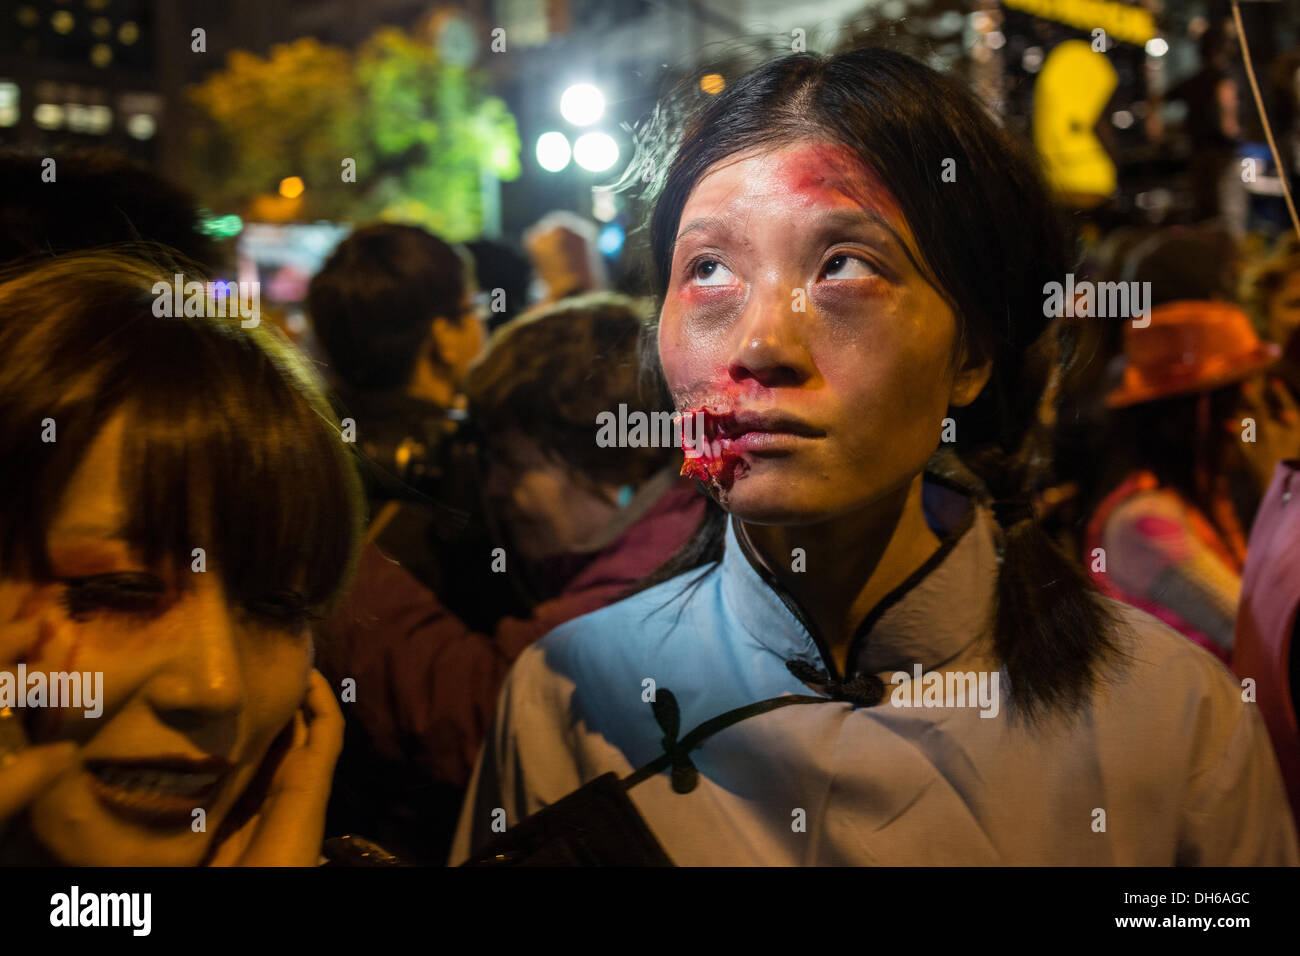 New York, NY, 31. Oktober 2013. Eine Frau in blutigen Make-up als ob ihr Gesicht in der jährlichen Greenwich Village Halloween Parade aufgerissen worden war. Bildnachweis: Ed Lefkowicz/Alamy Live-Nachrichten Stockfoto